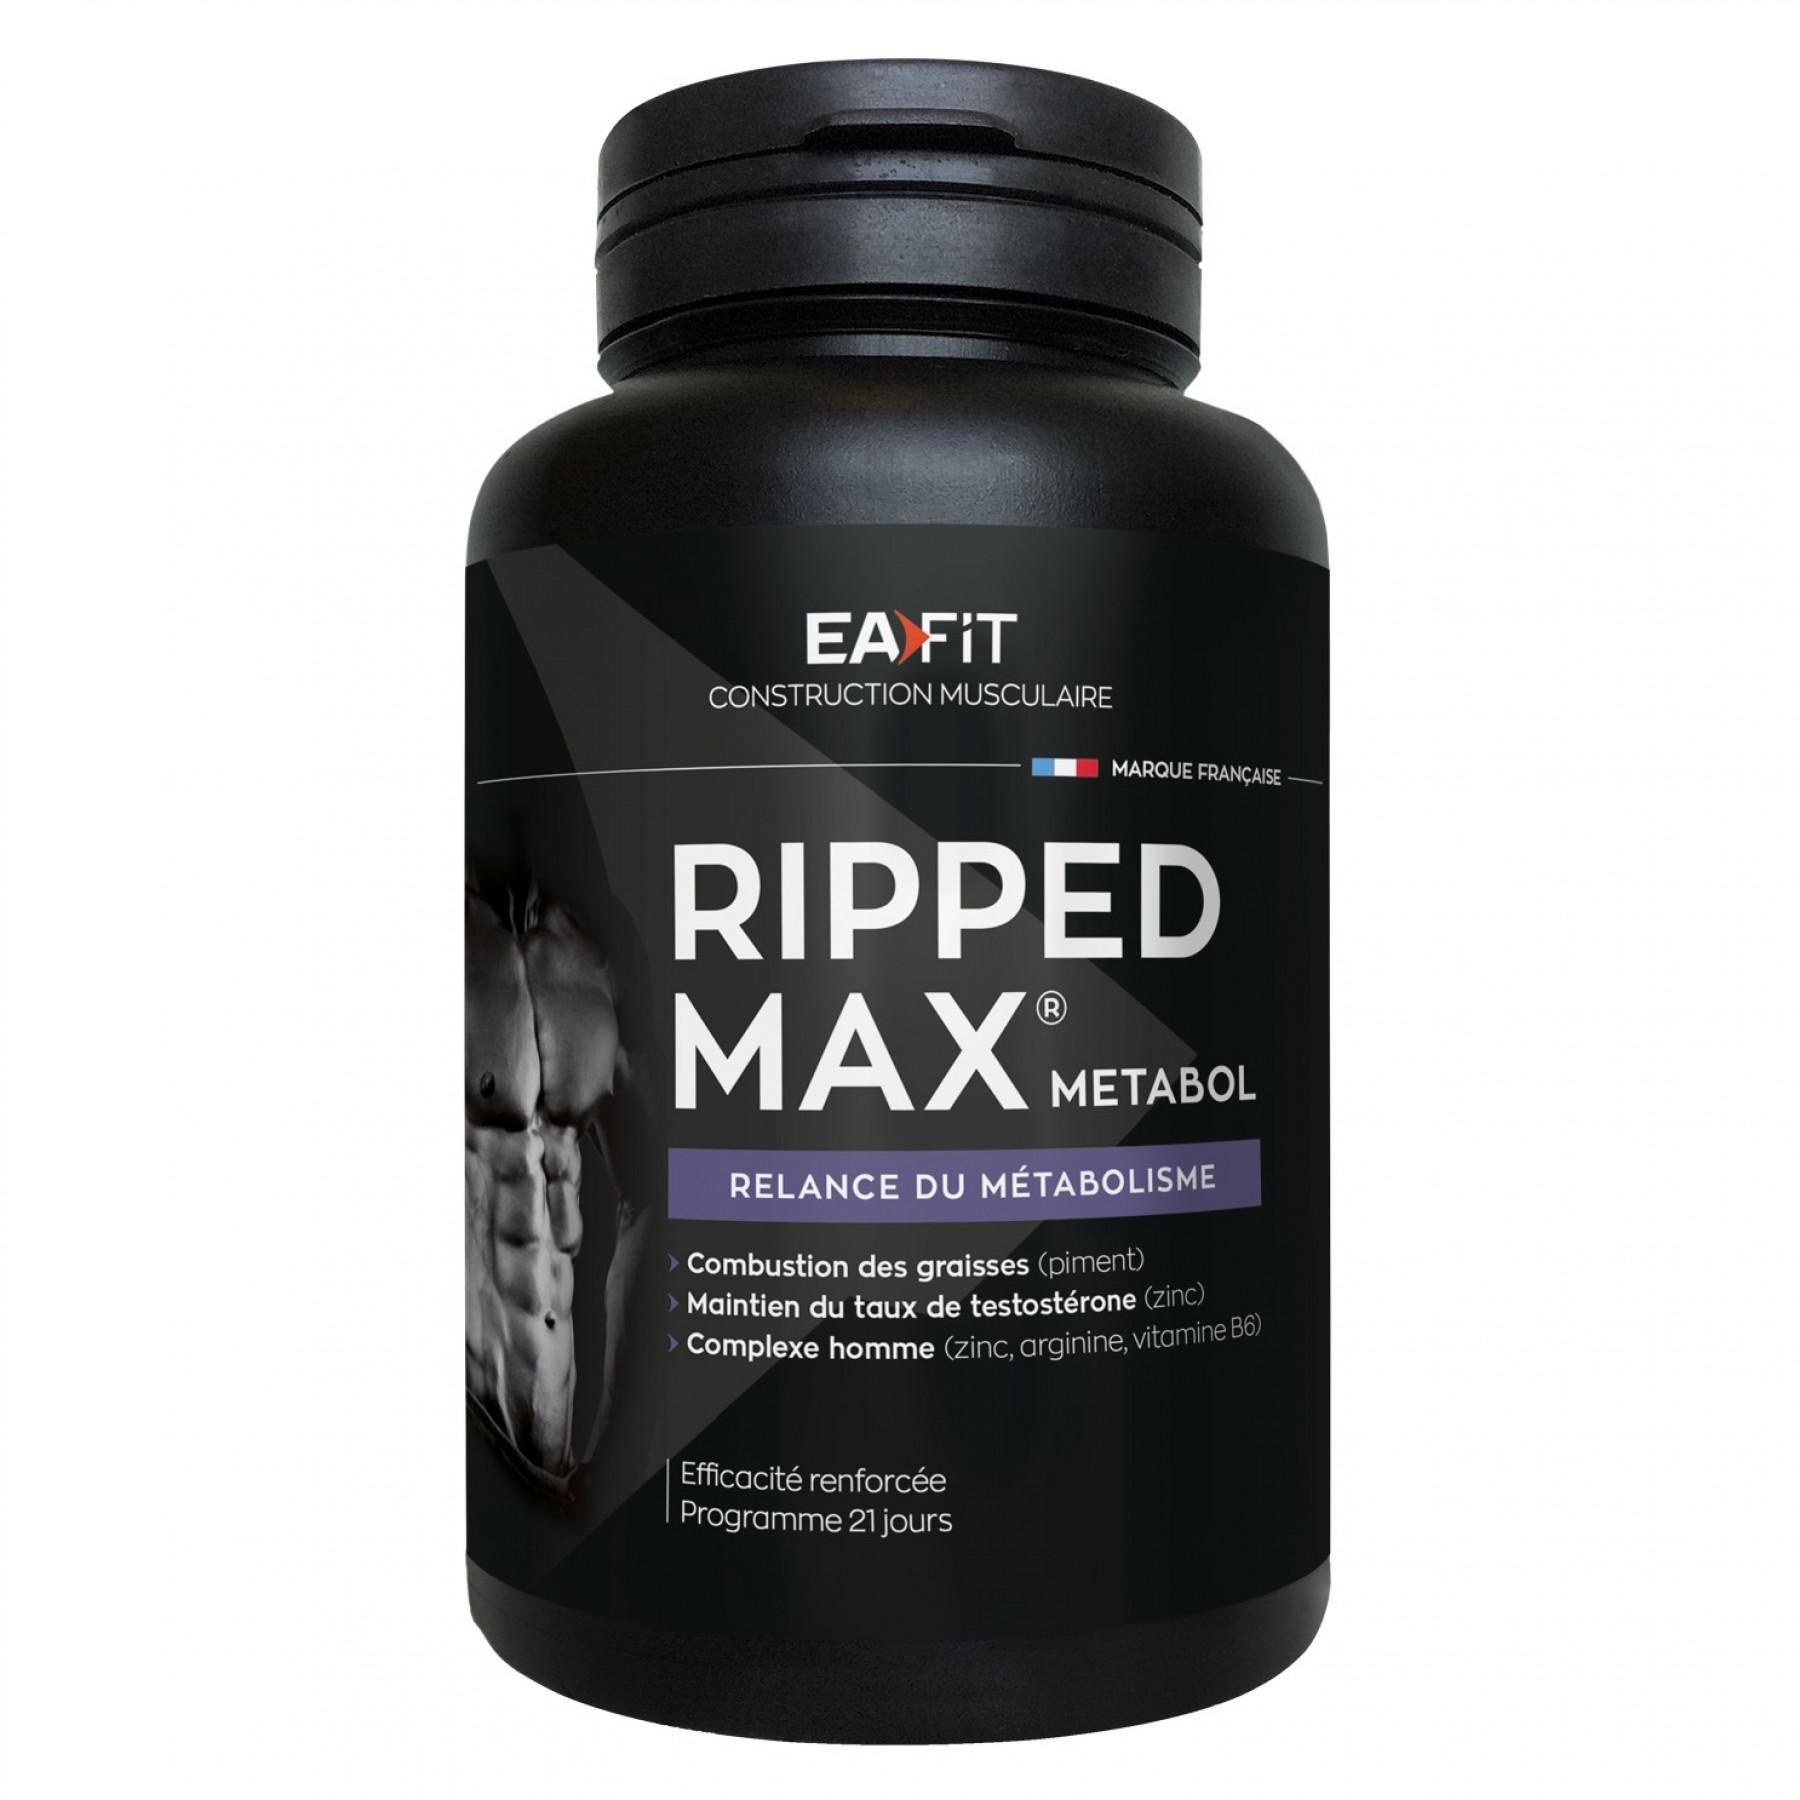 Ripped max metabolizm EA Fit (63 comprimés)